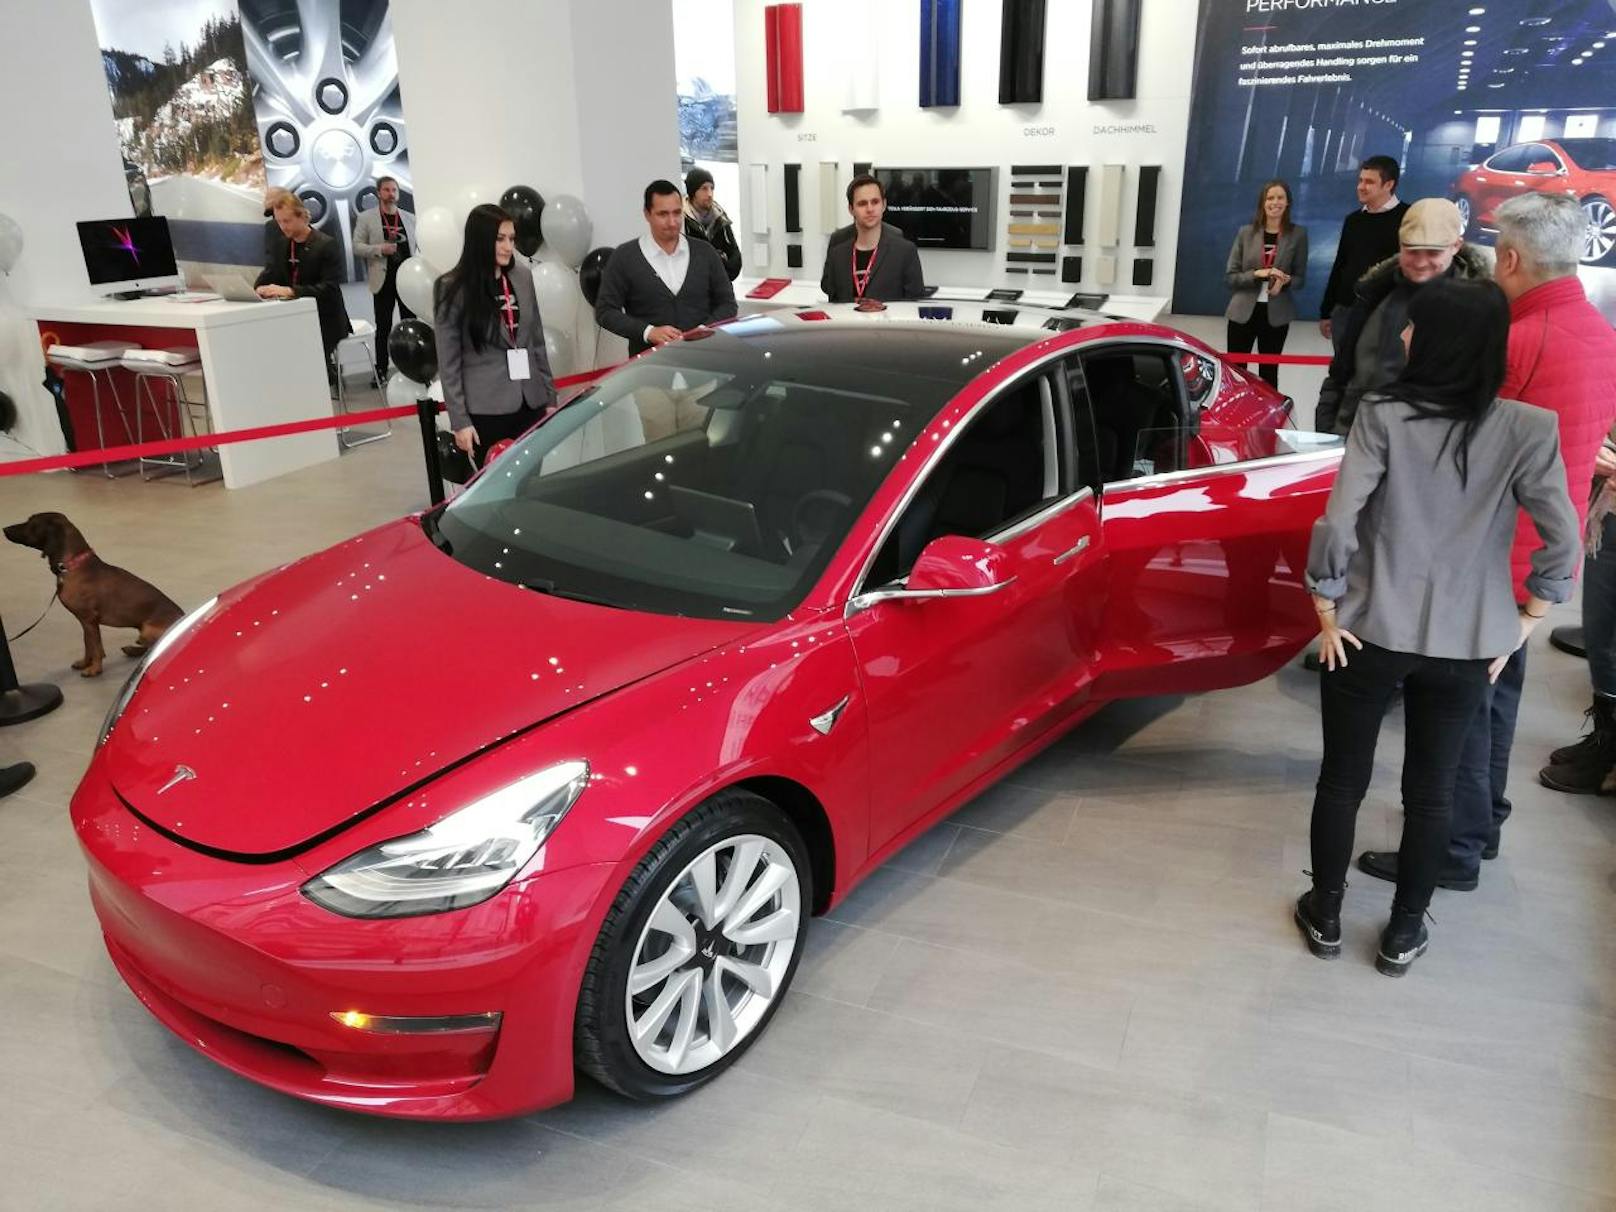 Das Model 3 befindet sich erstmals in Österreich